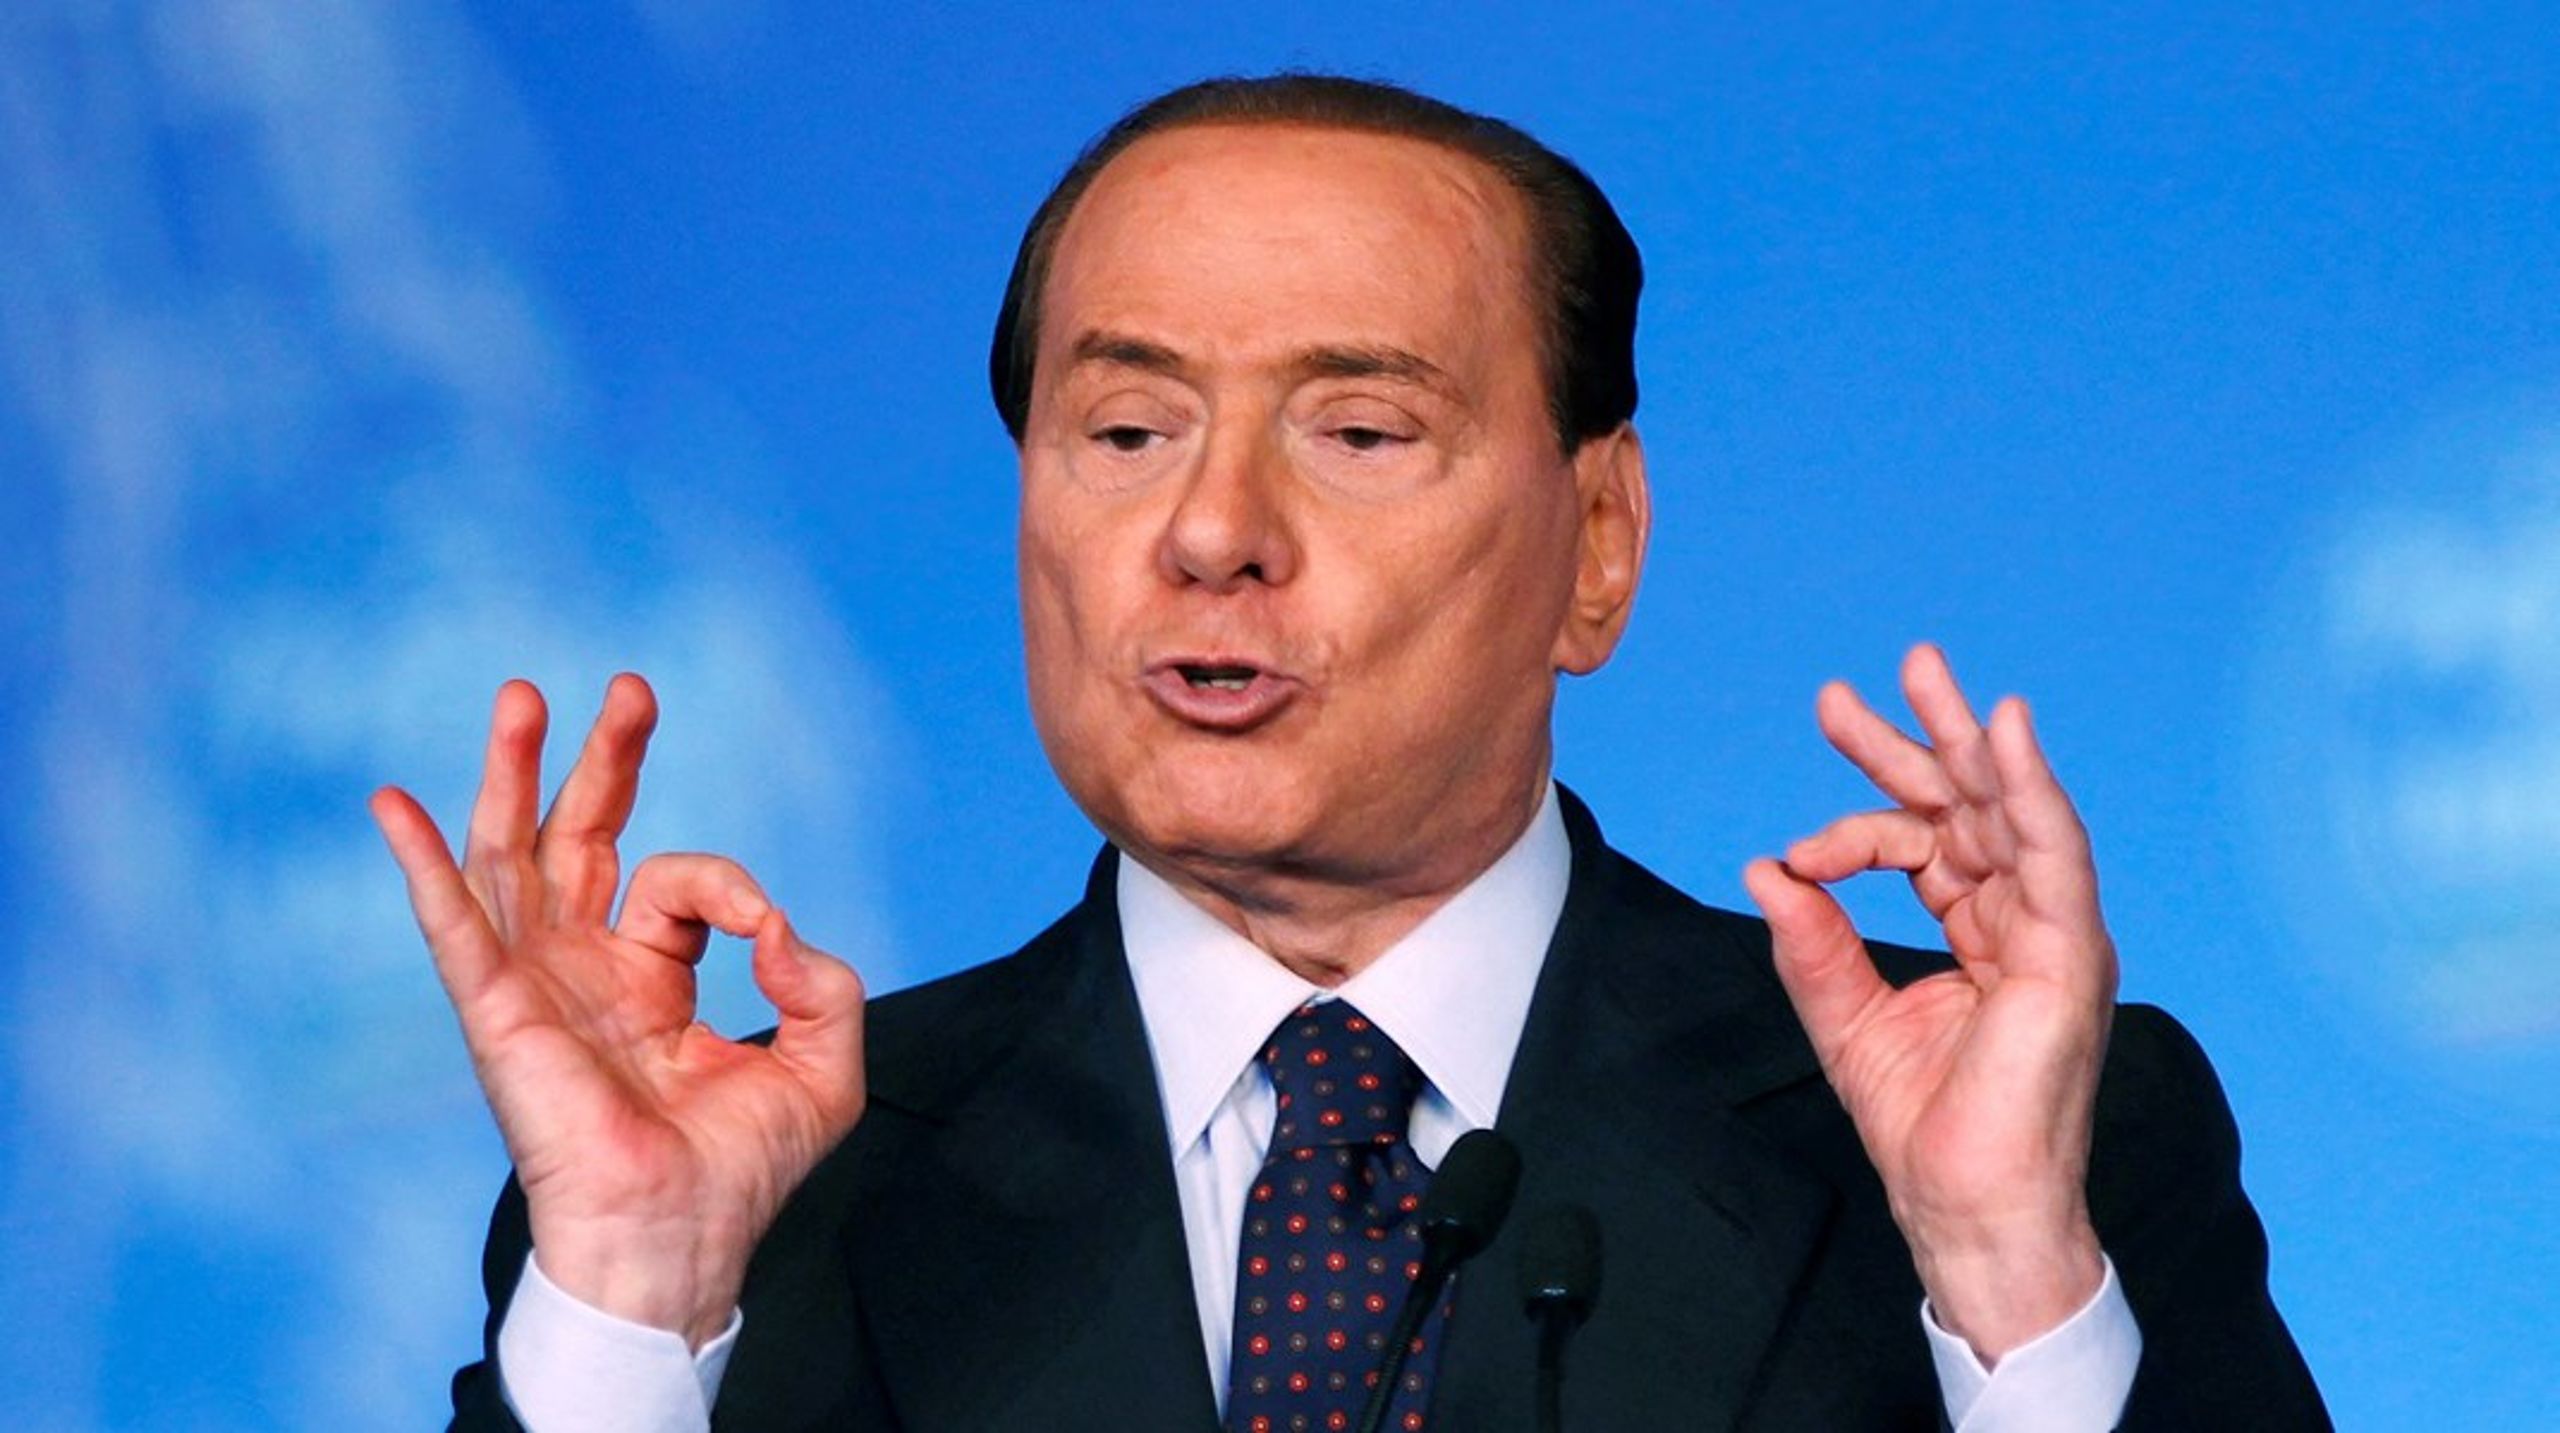 Ved at gå op imod ”den herskende klasse” gav&nbsp;Berlusconi&nbsp;håb til vælgergrupper, som følte sig udstødt og overset, skriver&nbsp;Michael Ehrenreich.